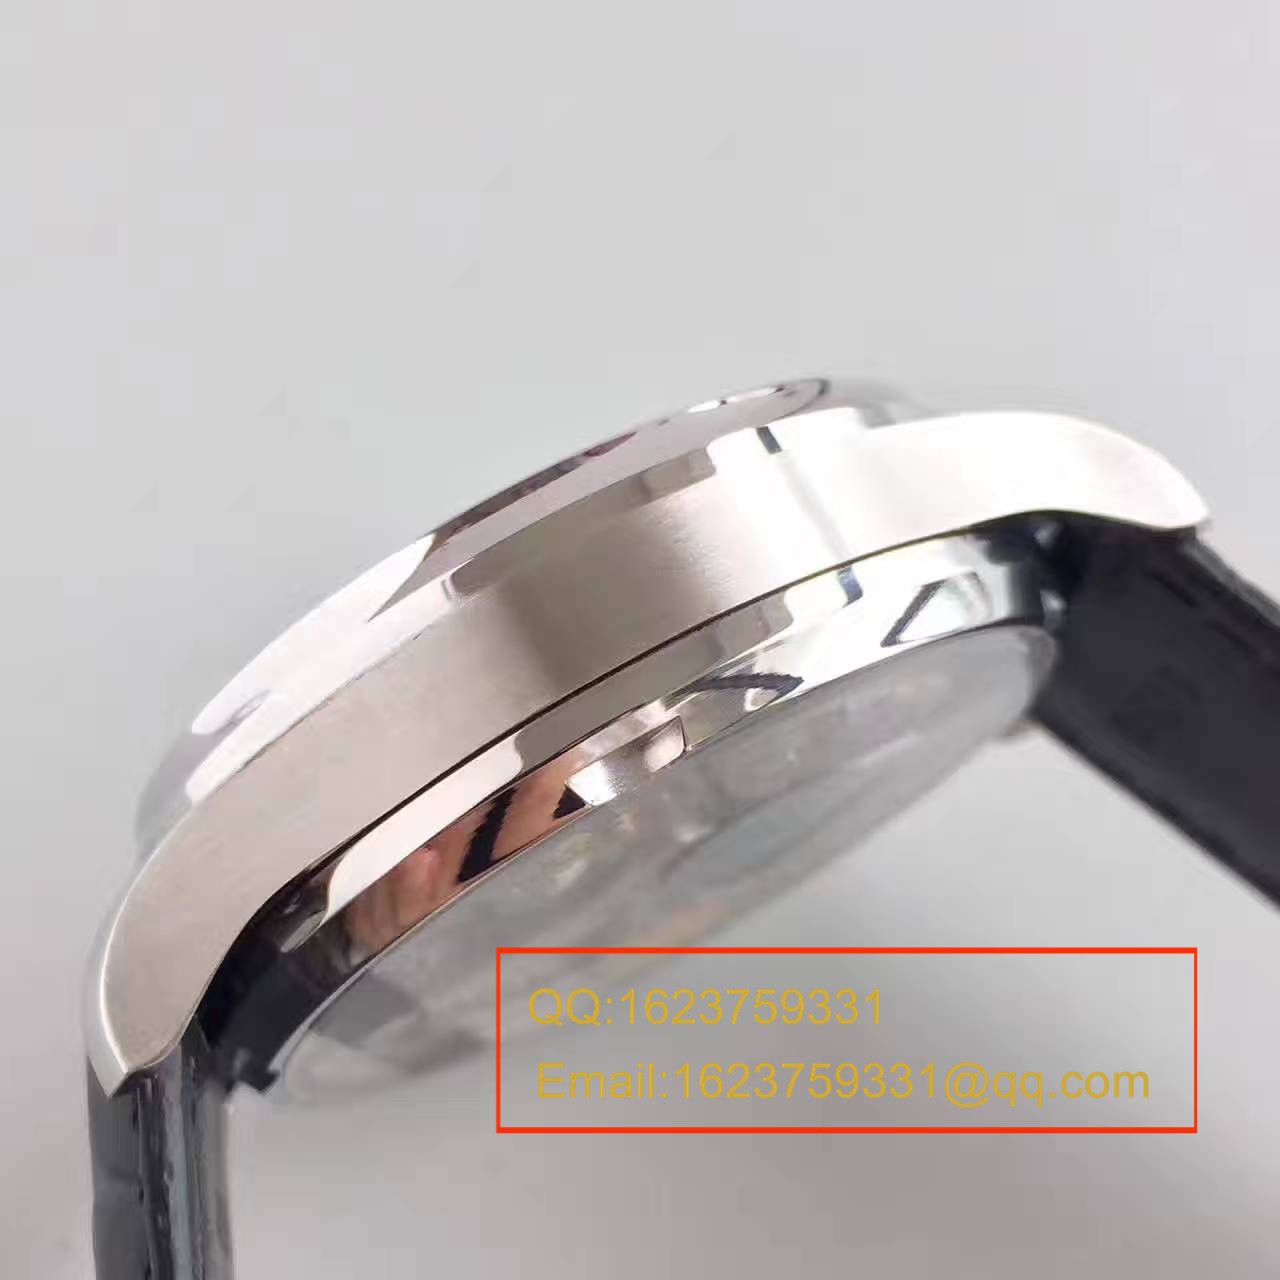 【ZF厂一比一高仿手表】 万国葡萄牙系列七日链IW500112 劳伦斯限量版腕表 / WG103